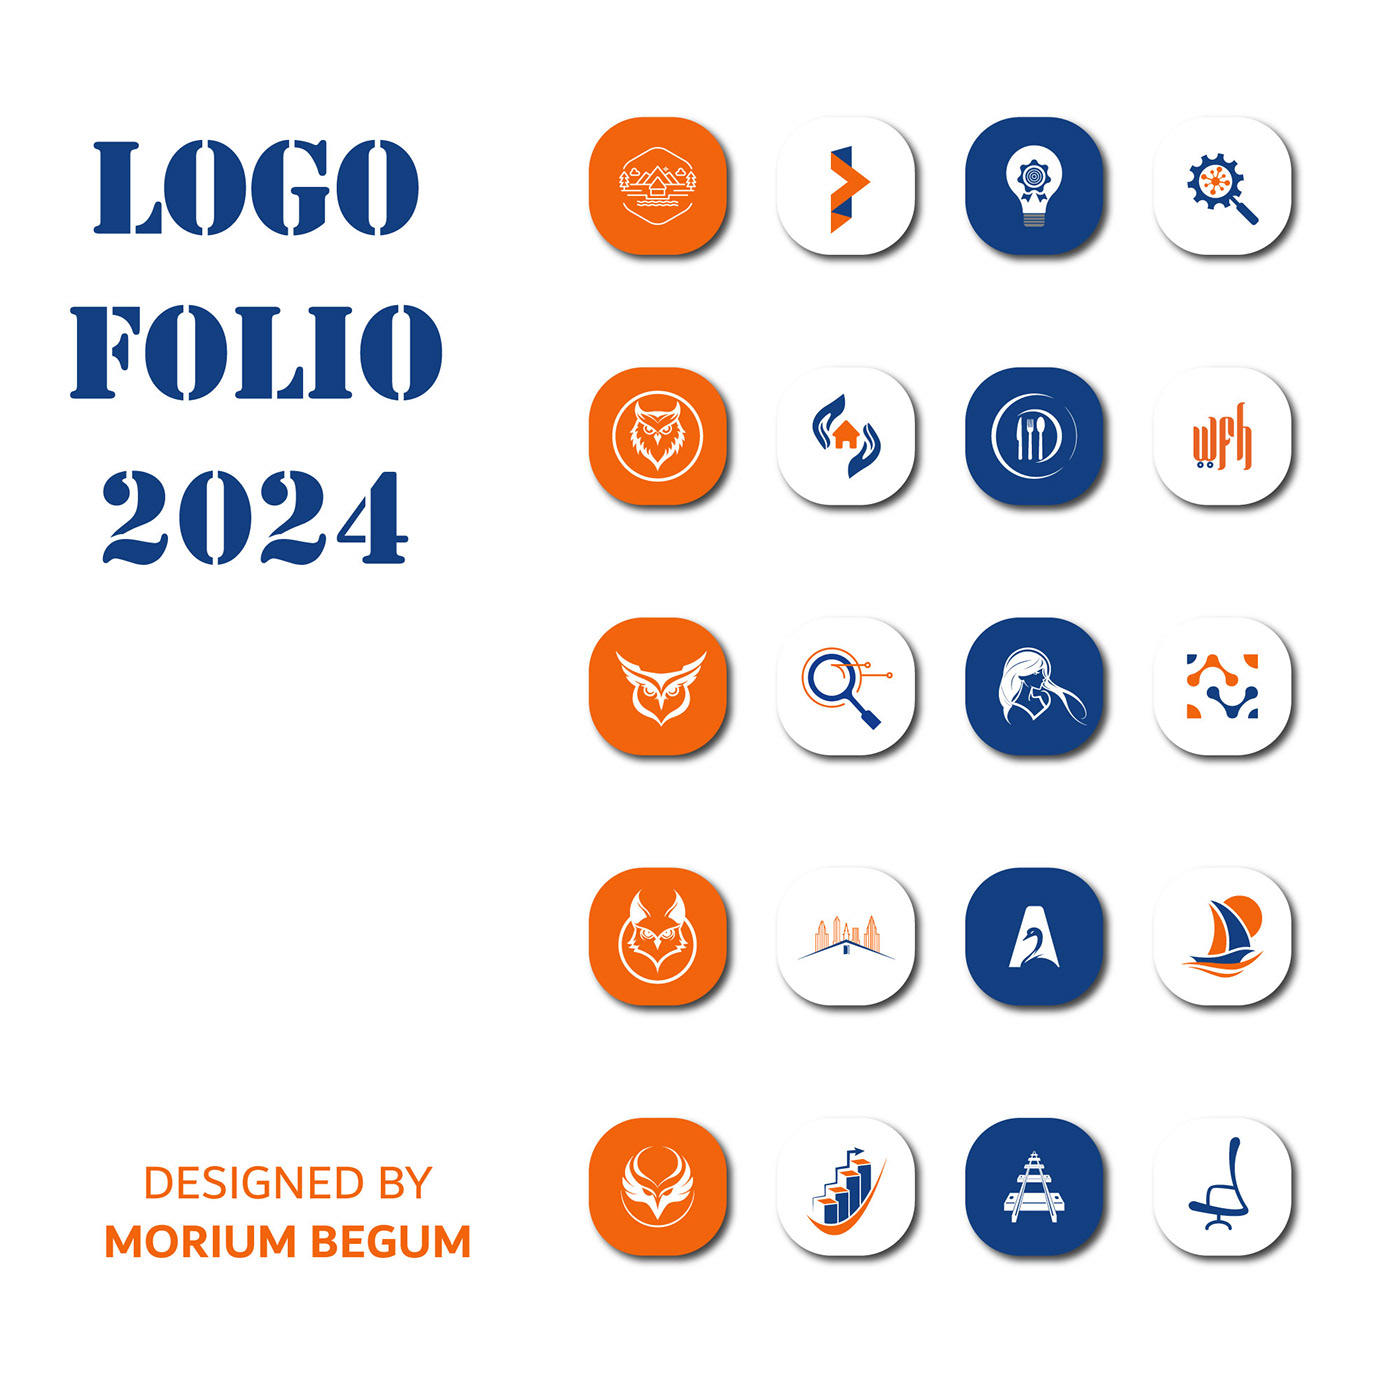 #logo #logos #logodesign #creativelogo #dailylogo #logomaker #logodesigns #logocreation #logodesigne